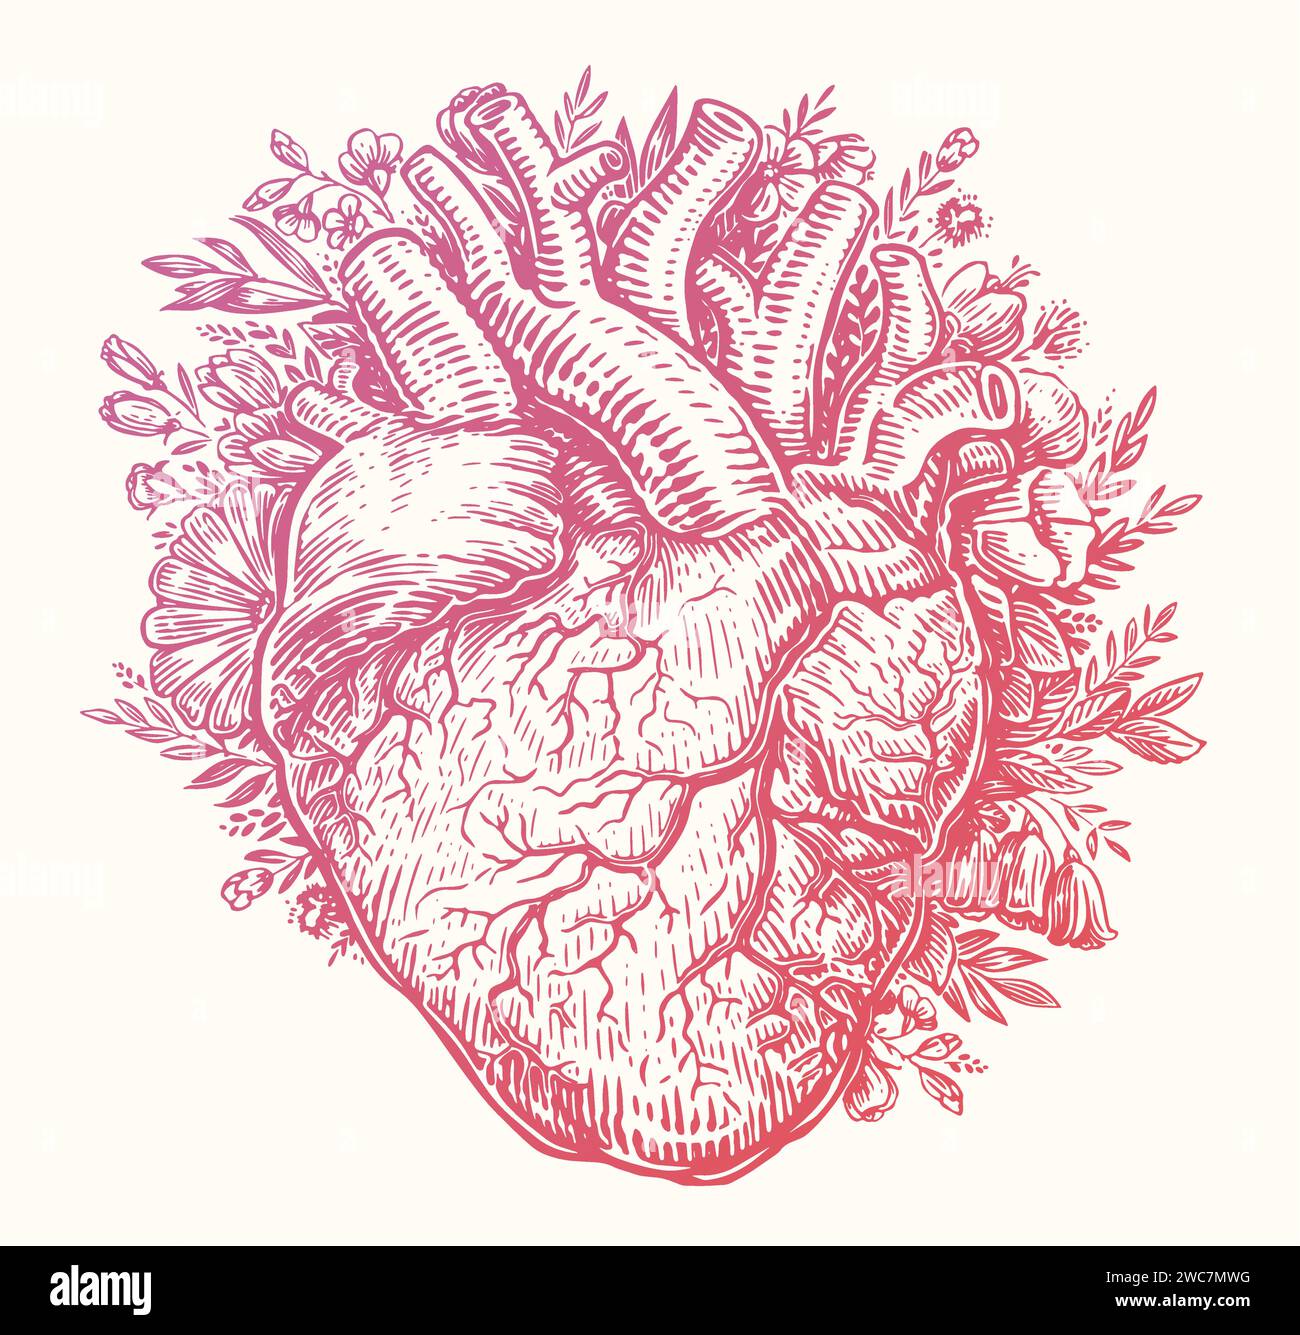 Coeur en fleurs. Carte de Saint-Valentin dans le style de gravure vintage. Illustration vectorielle d'esquisse dessinée à la main Illustration de Vecteur